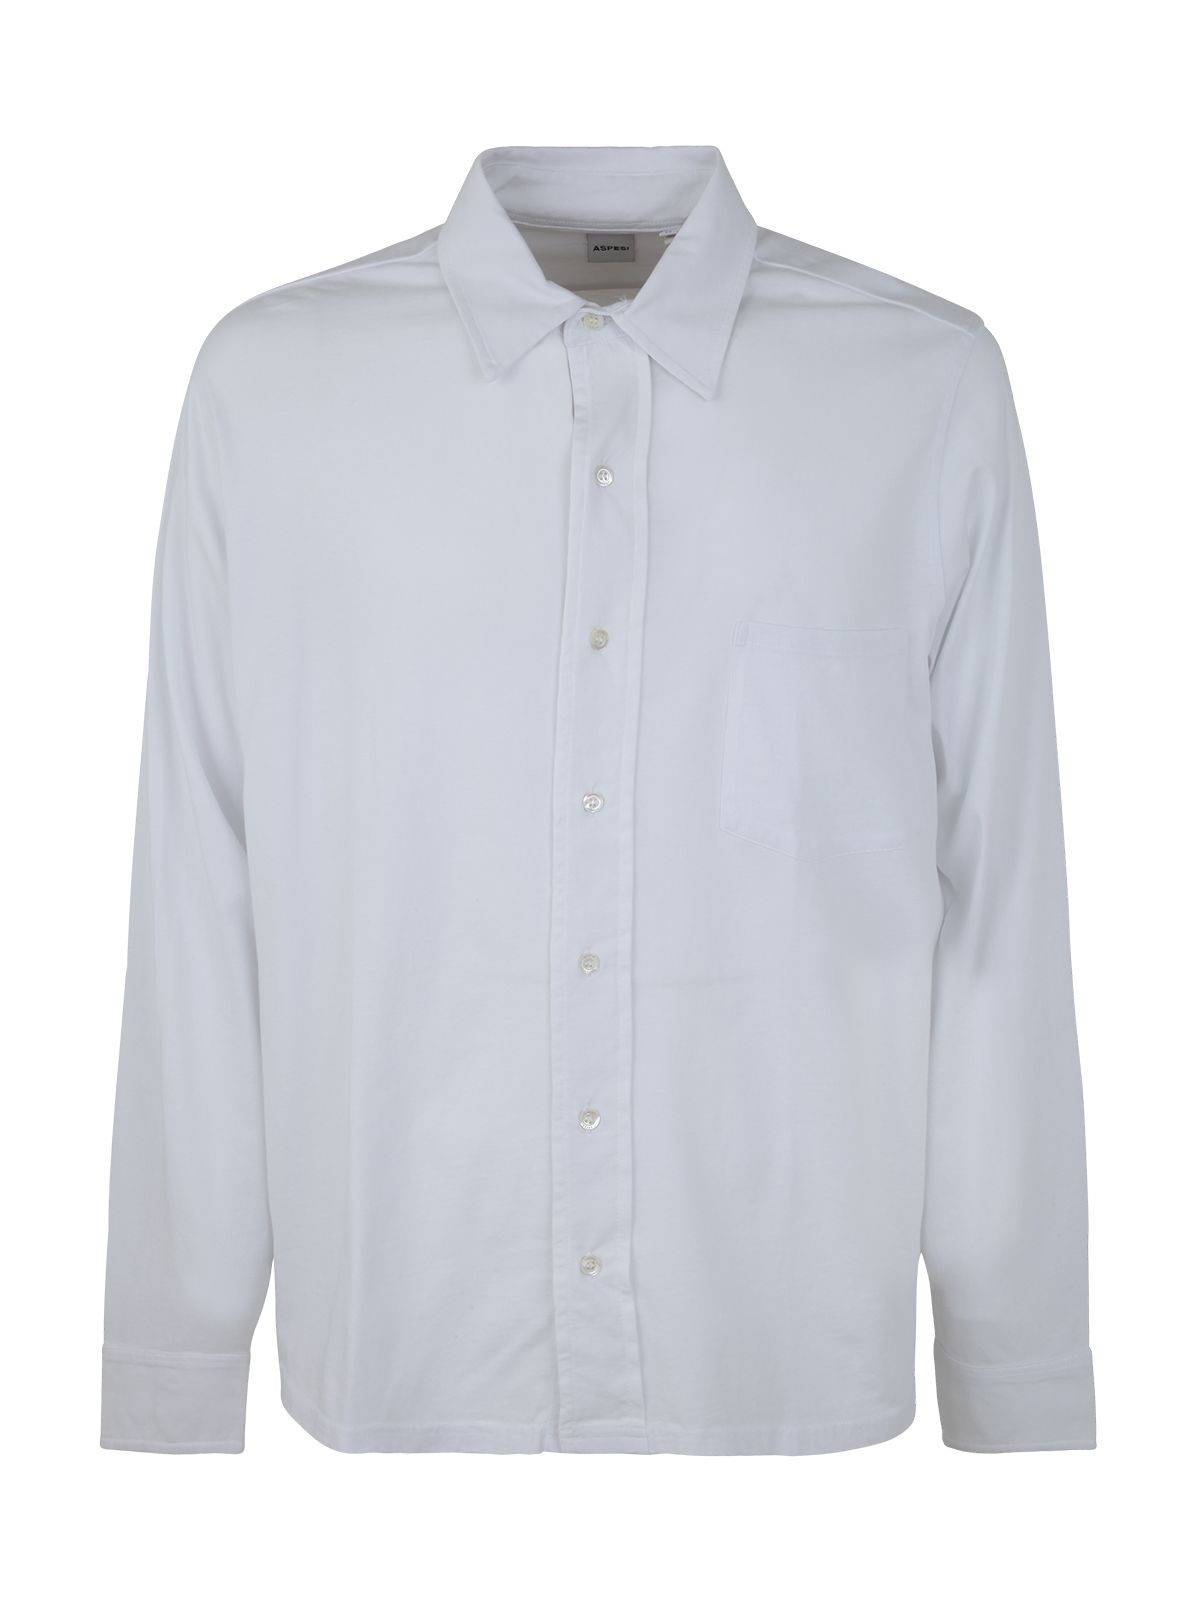 Men's Cotton Shirt AY34 - 1